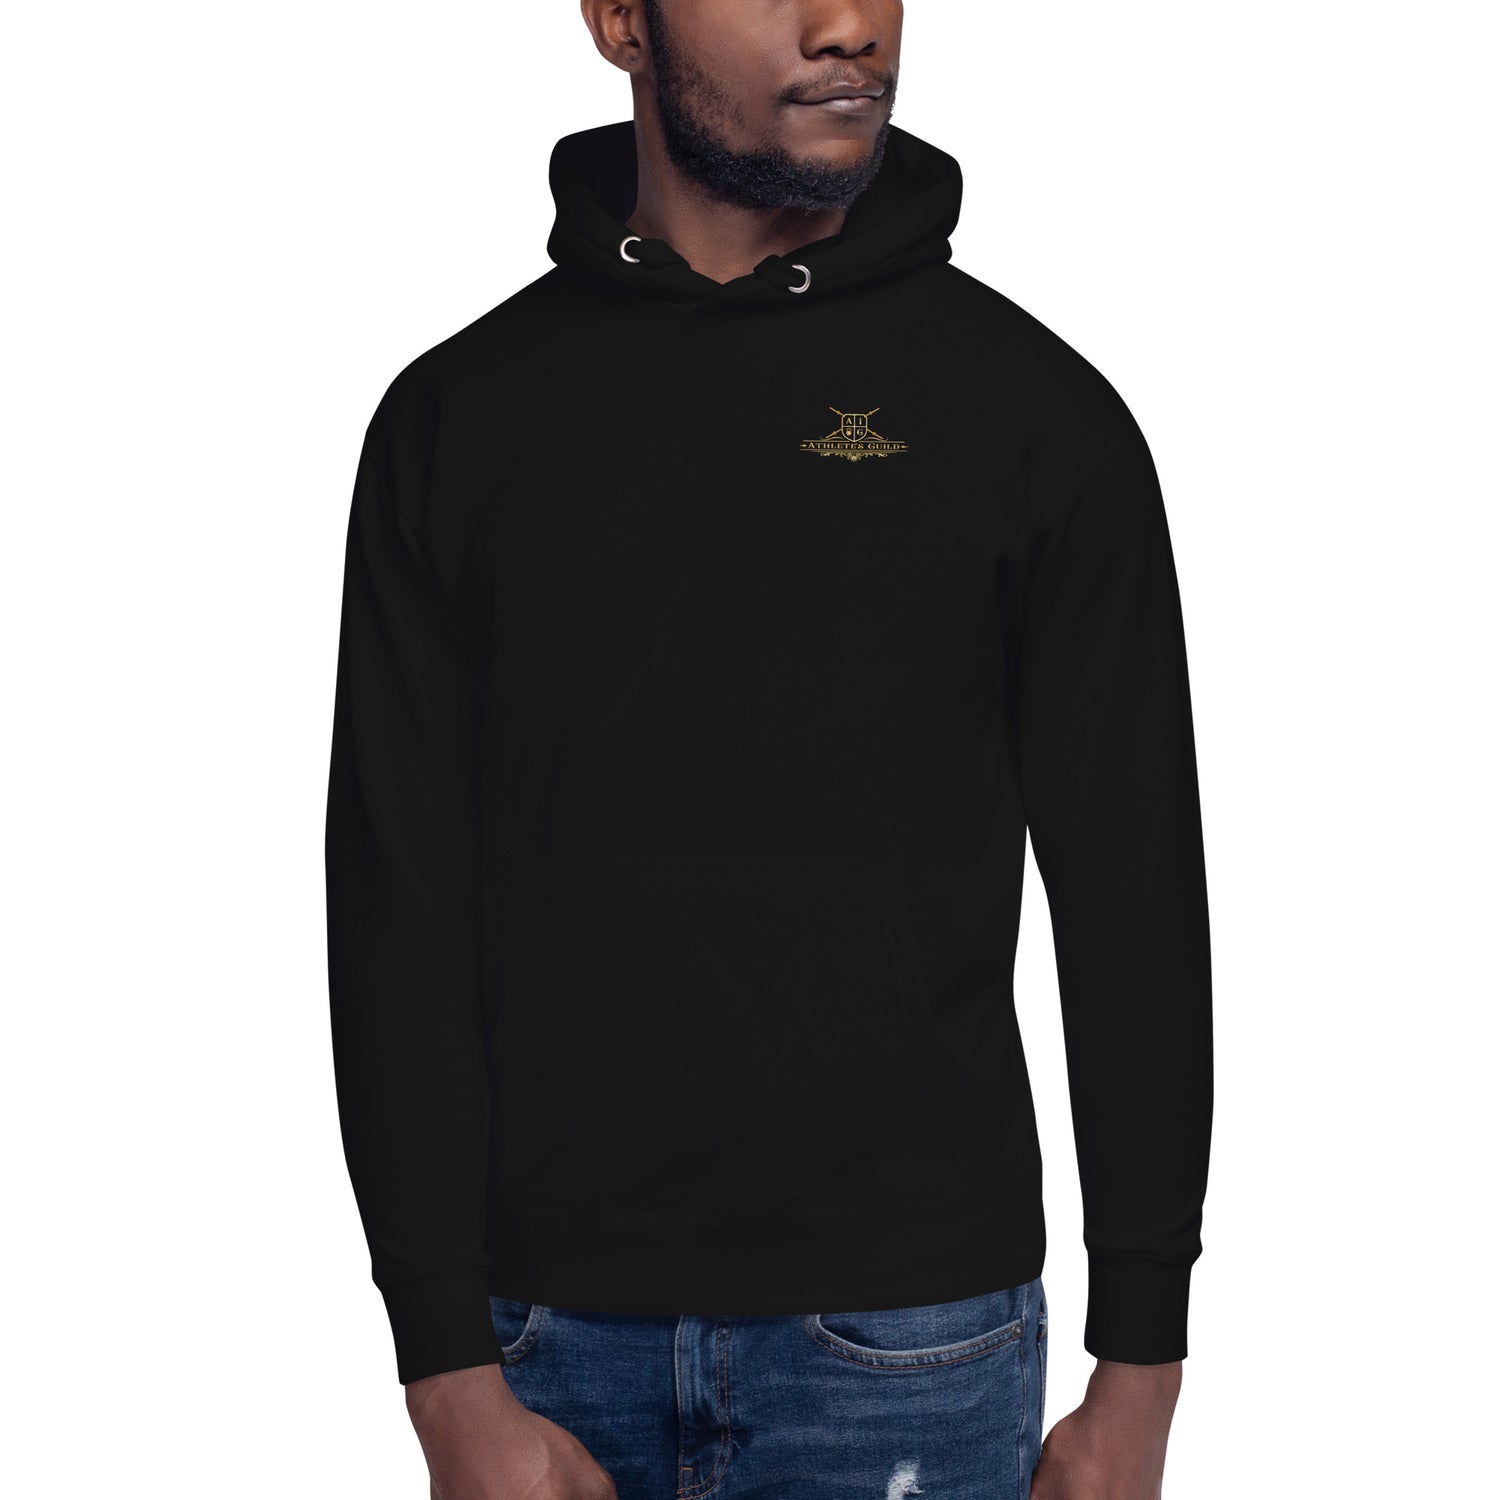 unisex premium hoodie black front